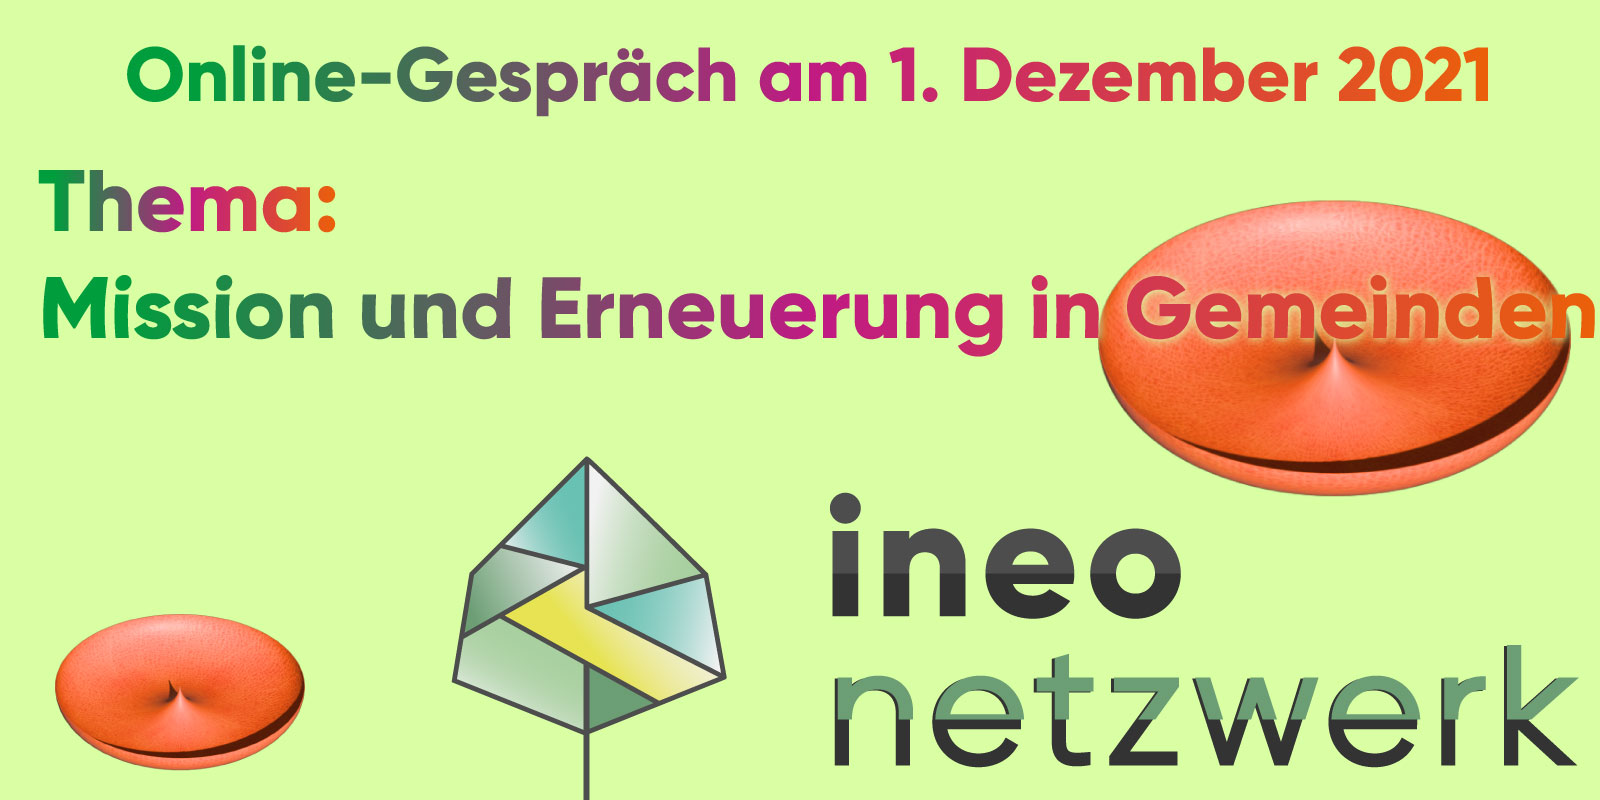 Ineo Nnetzwerk, Onlinegespräch, Mission und Erneuerung in Gemeinden.